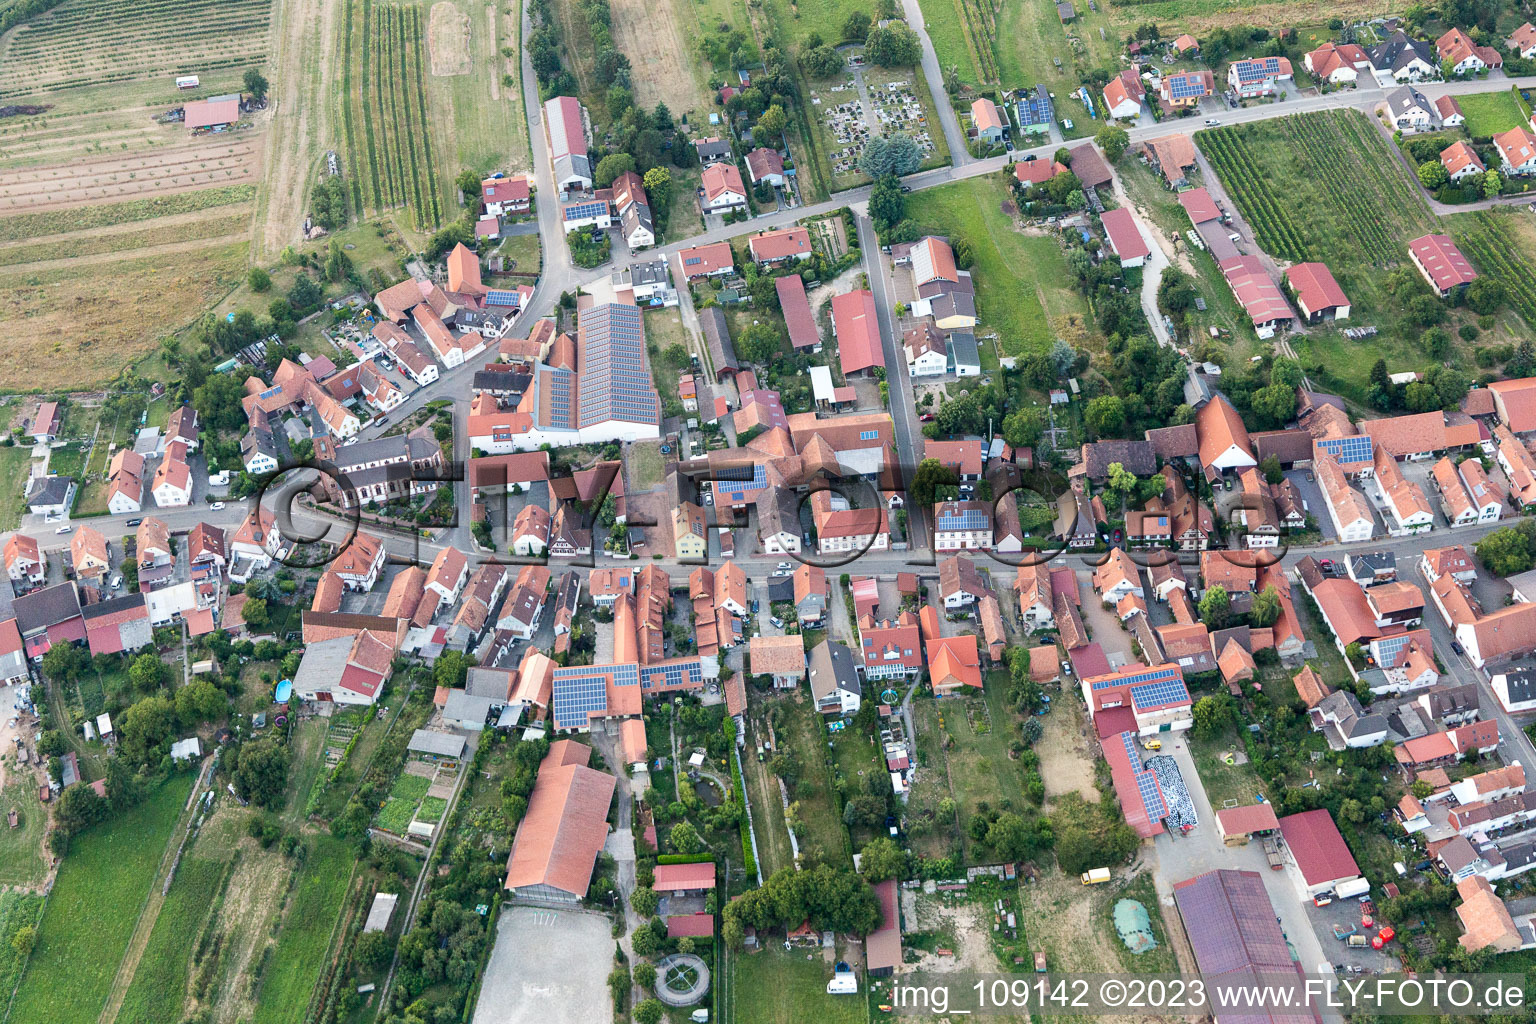 Schweighofen im Bundesland Rheinland-Pfalz, Deutschland von der Drohne aus gesehen